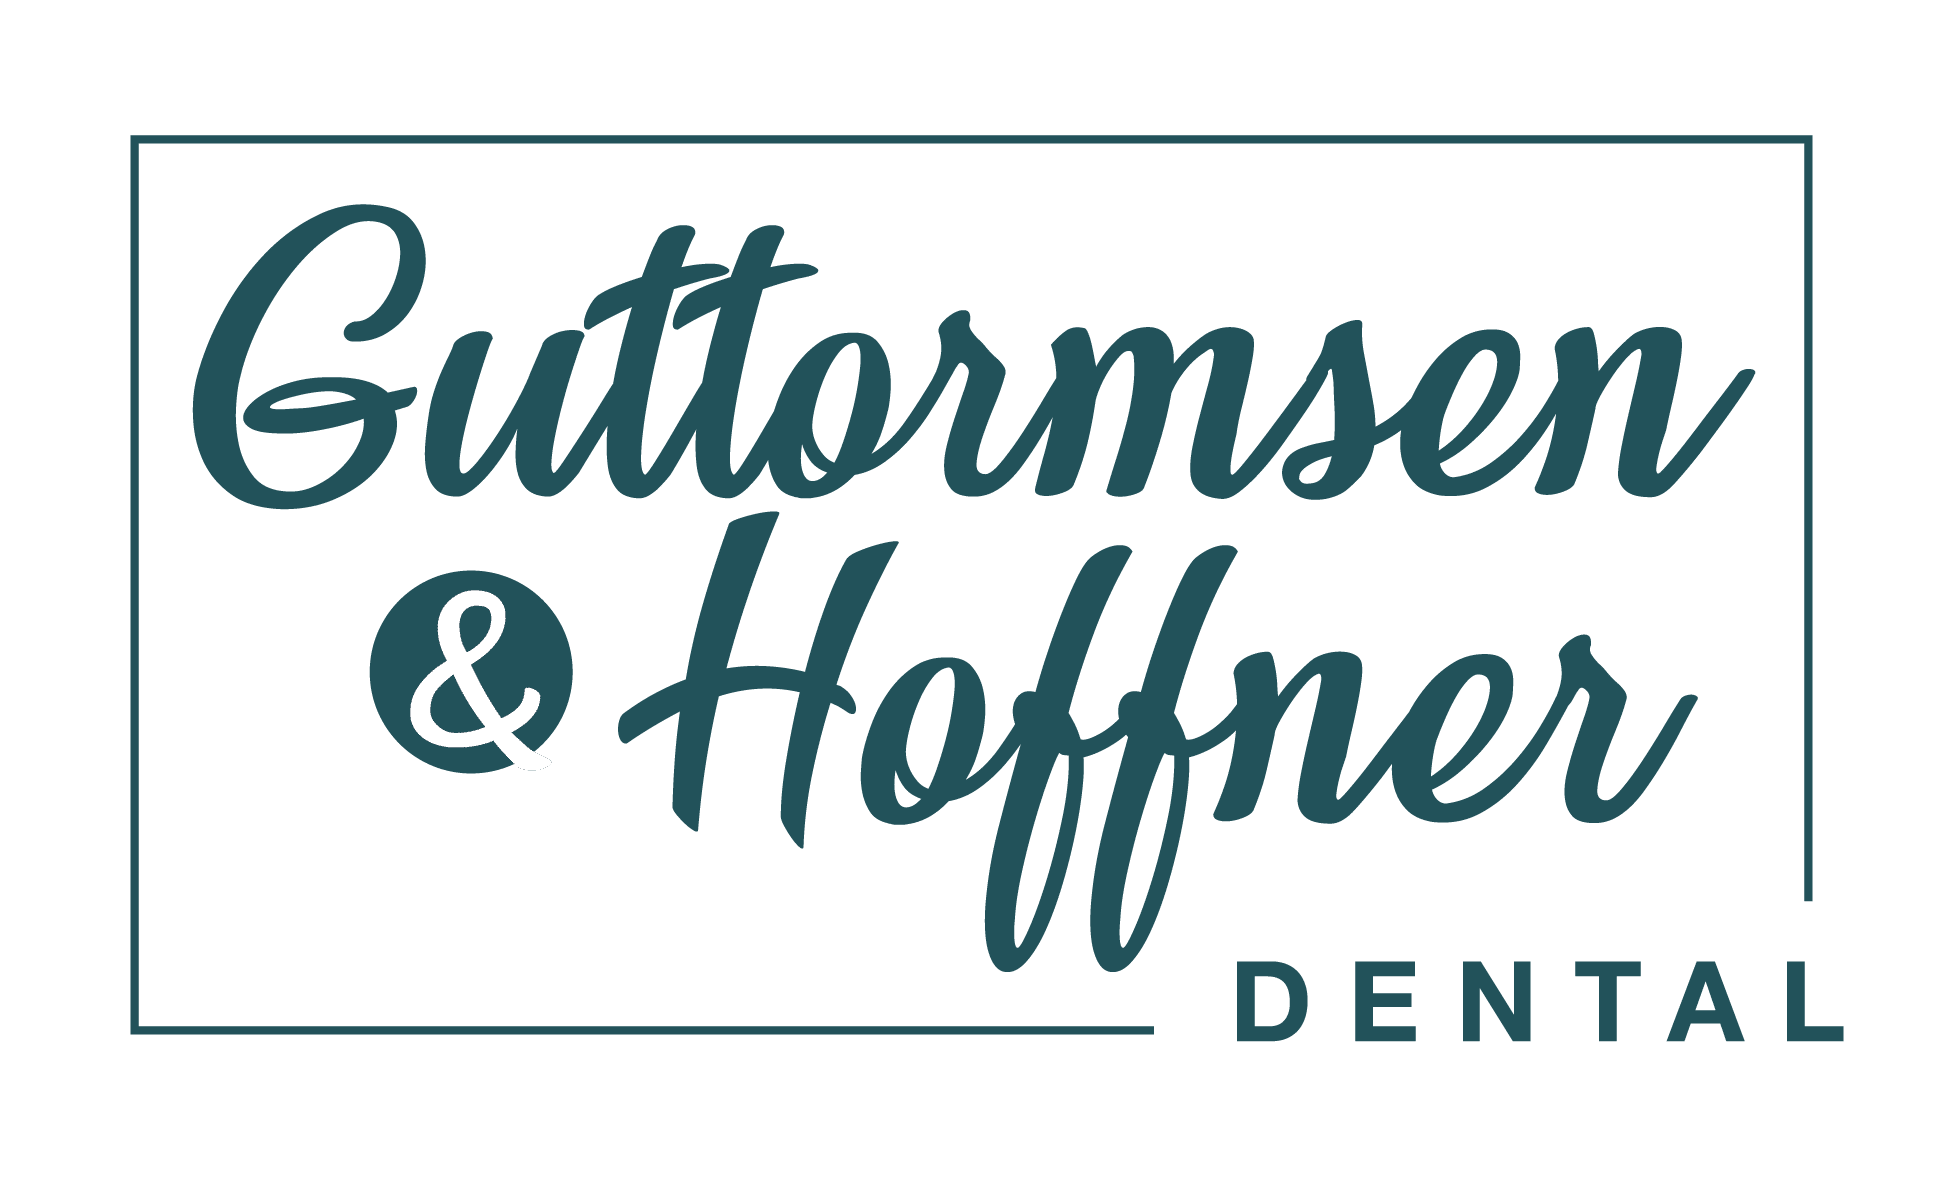 Guttormsen & Hoffner Dental